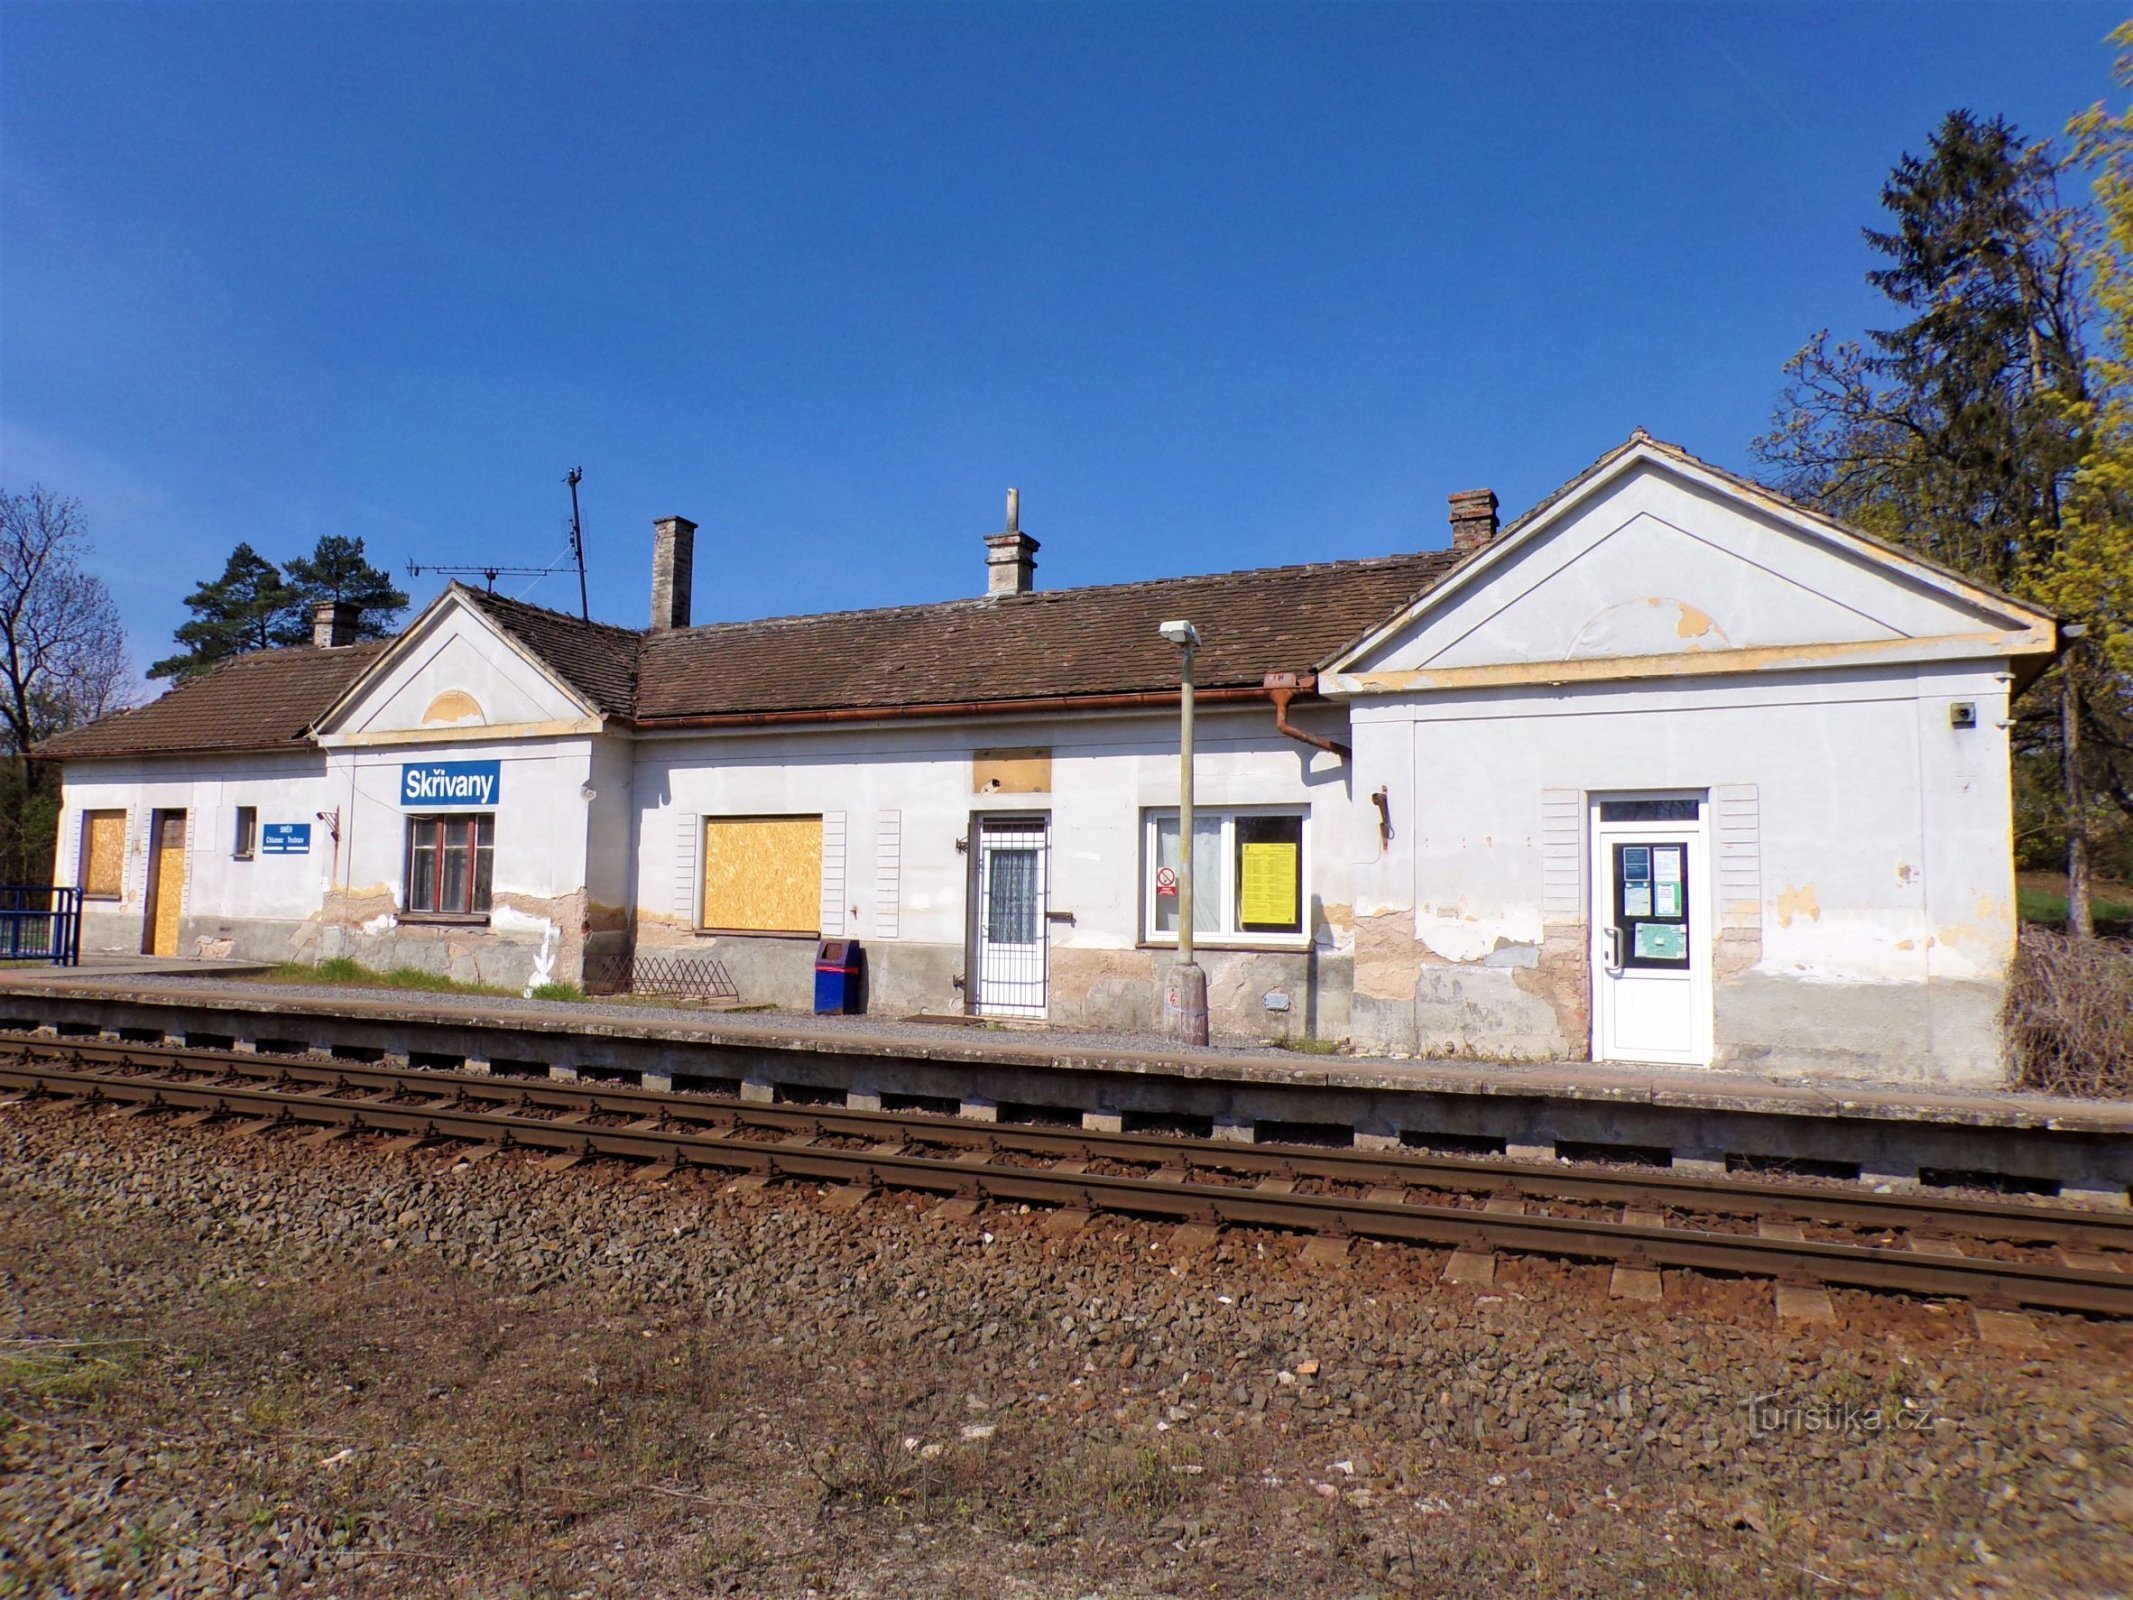 Dworzec kolejowy (Skrivany, 30.4.2021)